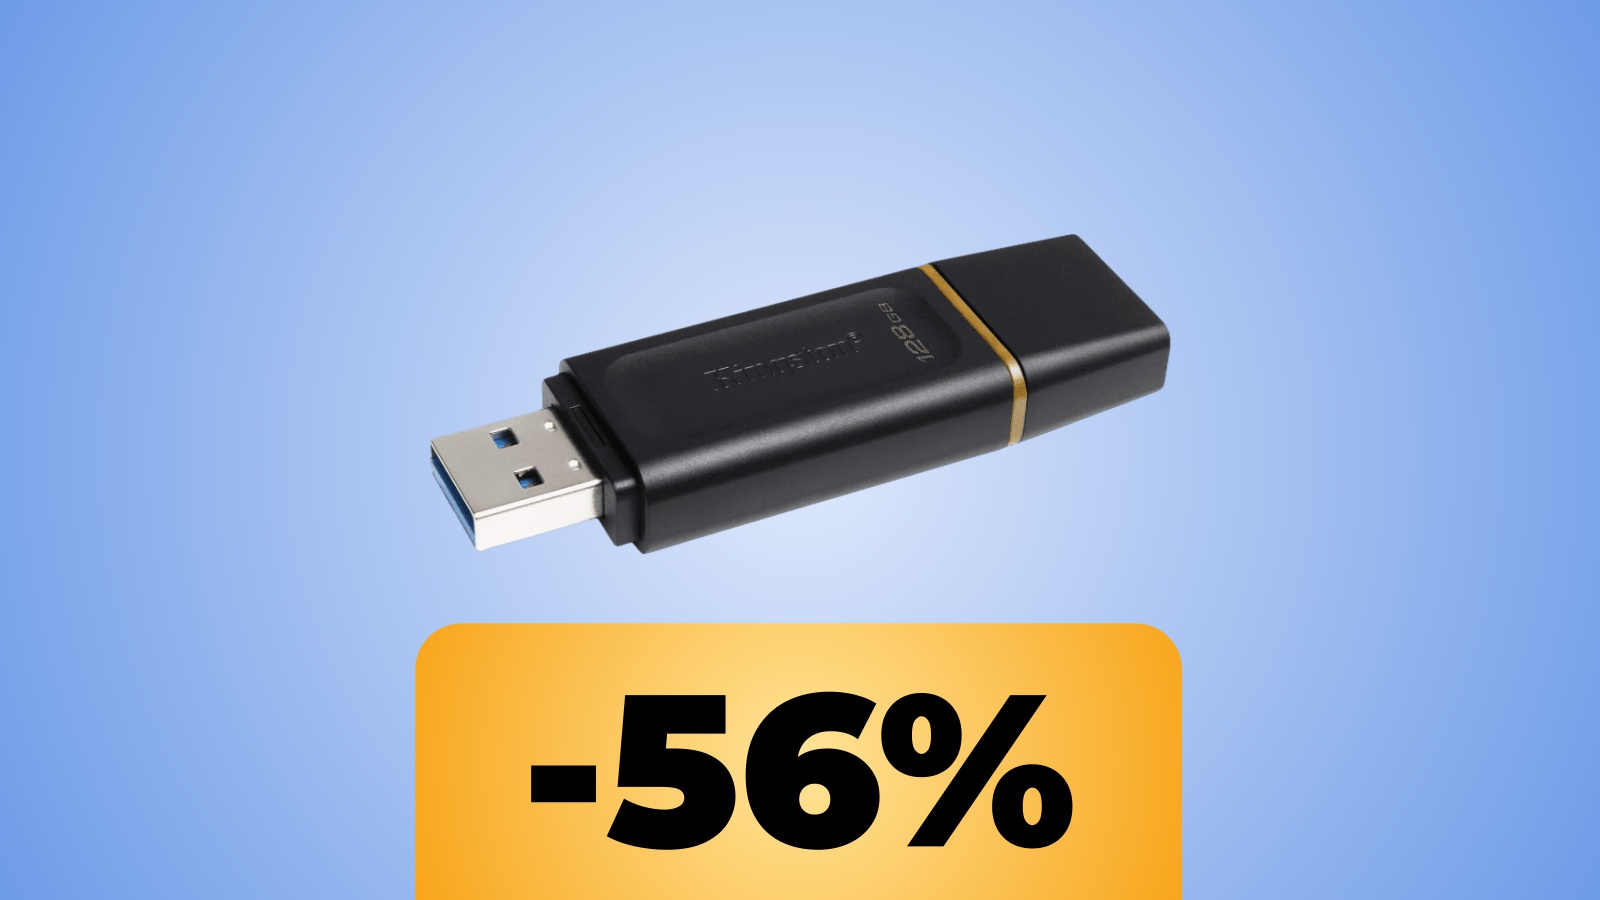 Flash Drive USB 3.2 Gen 1 di Kingston da 128 GB in forte sconto su Amazon Italia